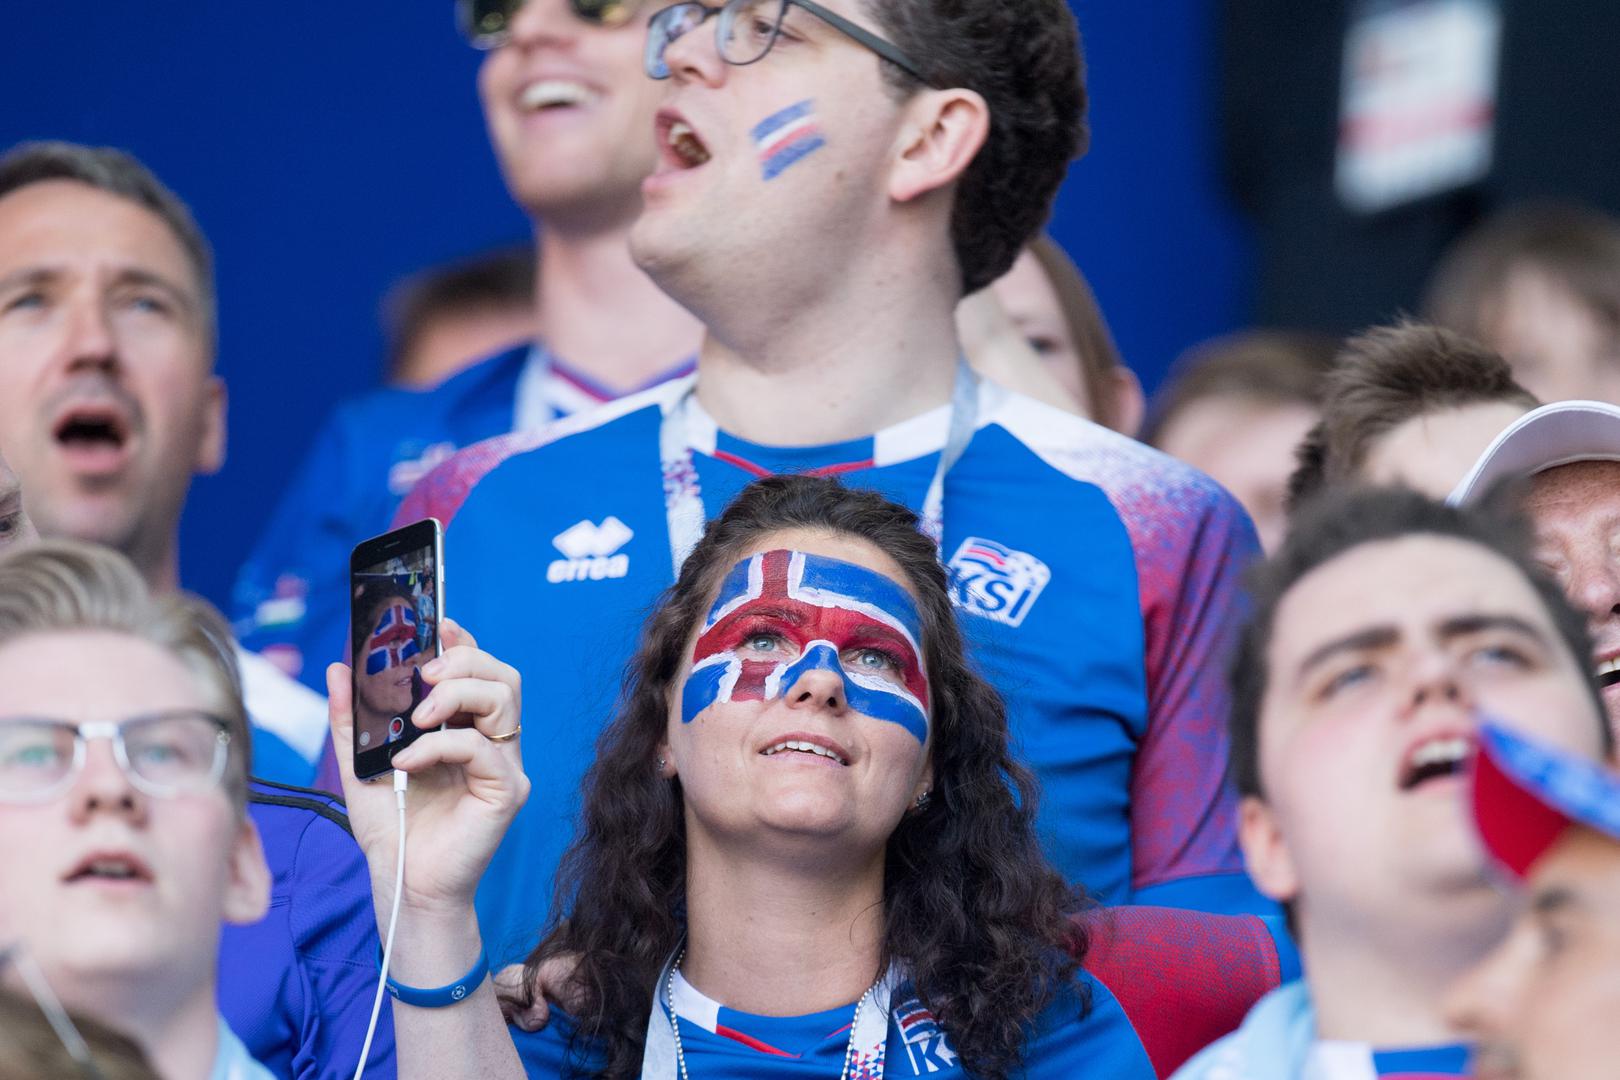 Island ima 335.000 stanovnika, a utakmica protiv Argentine bila mu je prva na završnicama svjetskih prvenstava